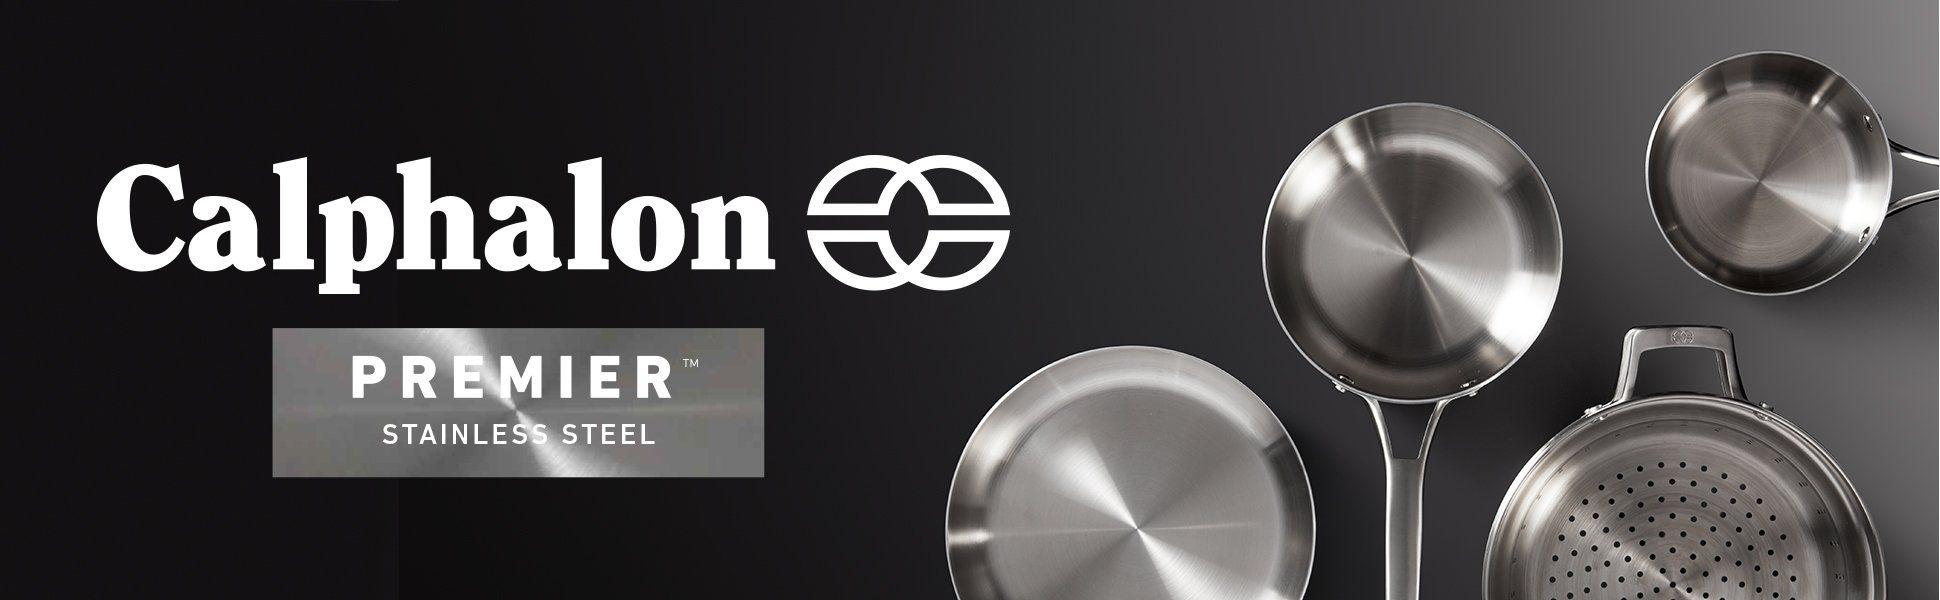 Calphalon Logo - Calphalon Premier Stainless Steel 8 Piece Cookware Set